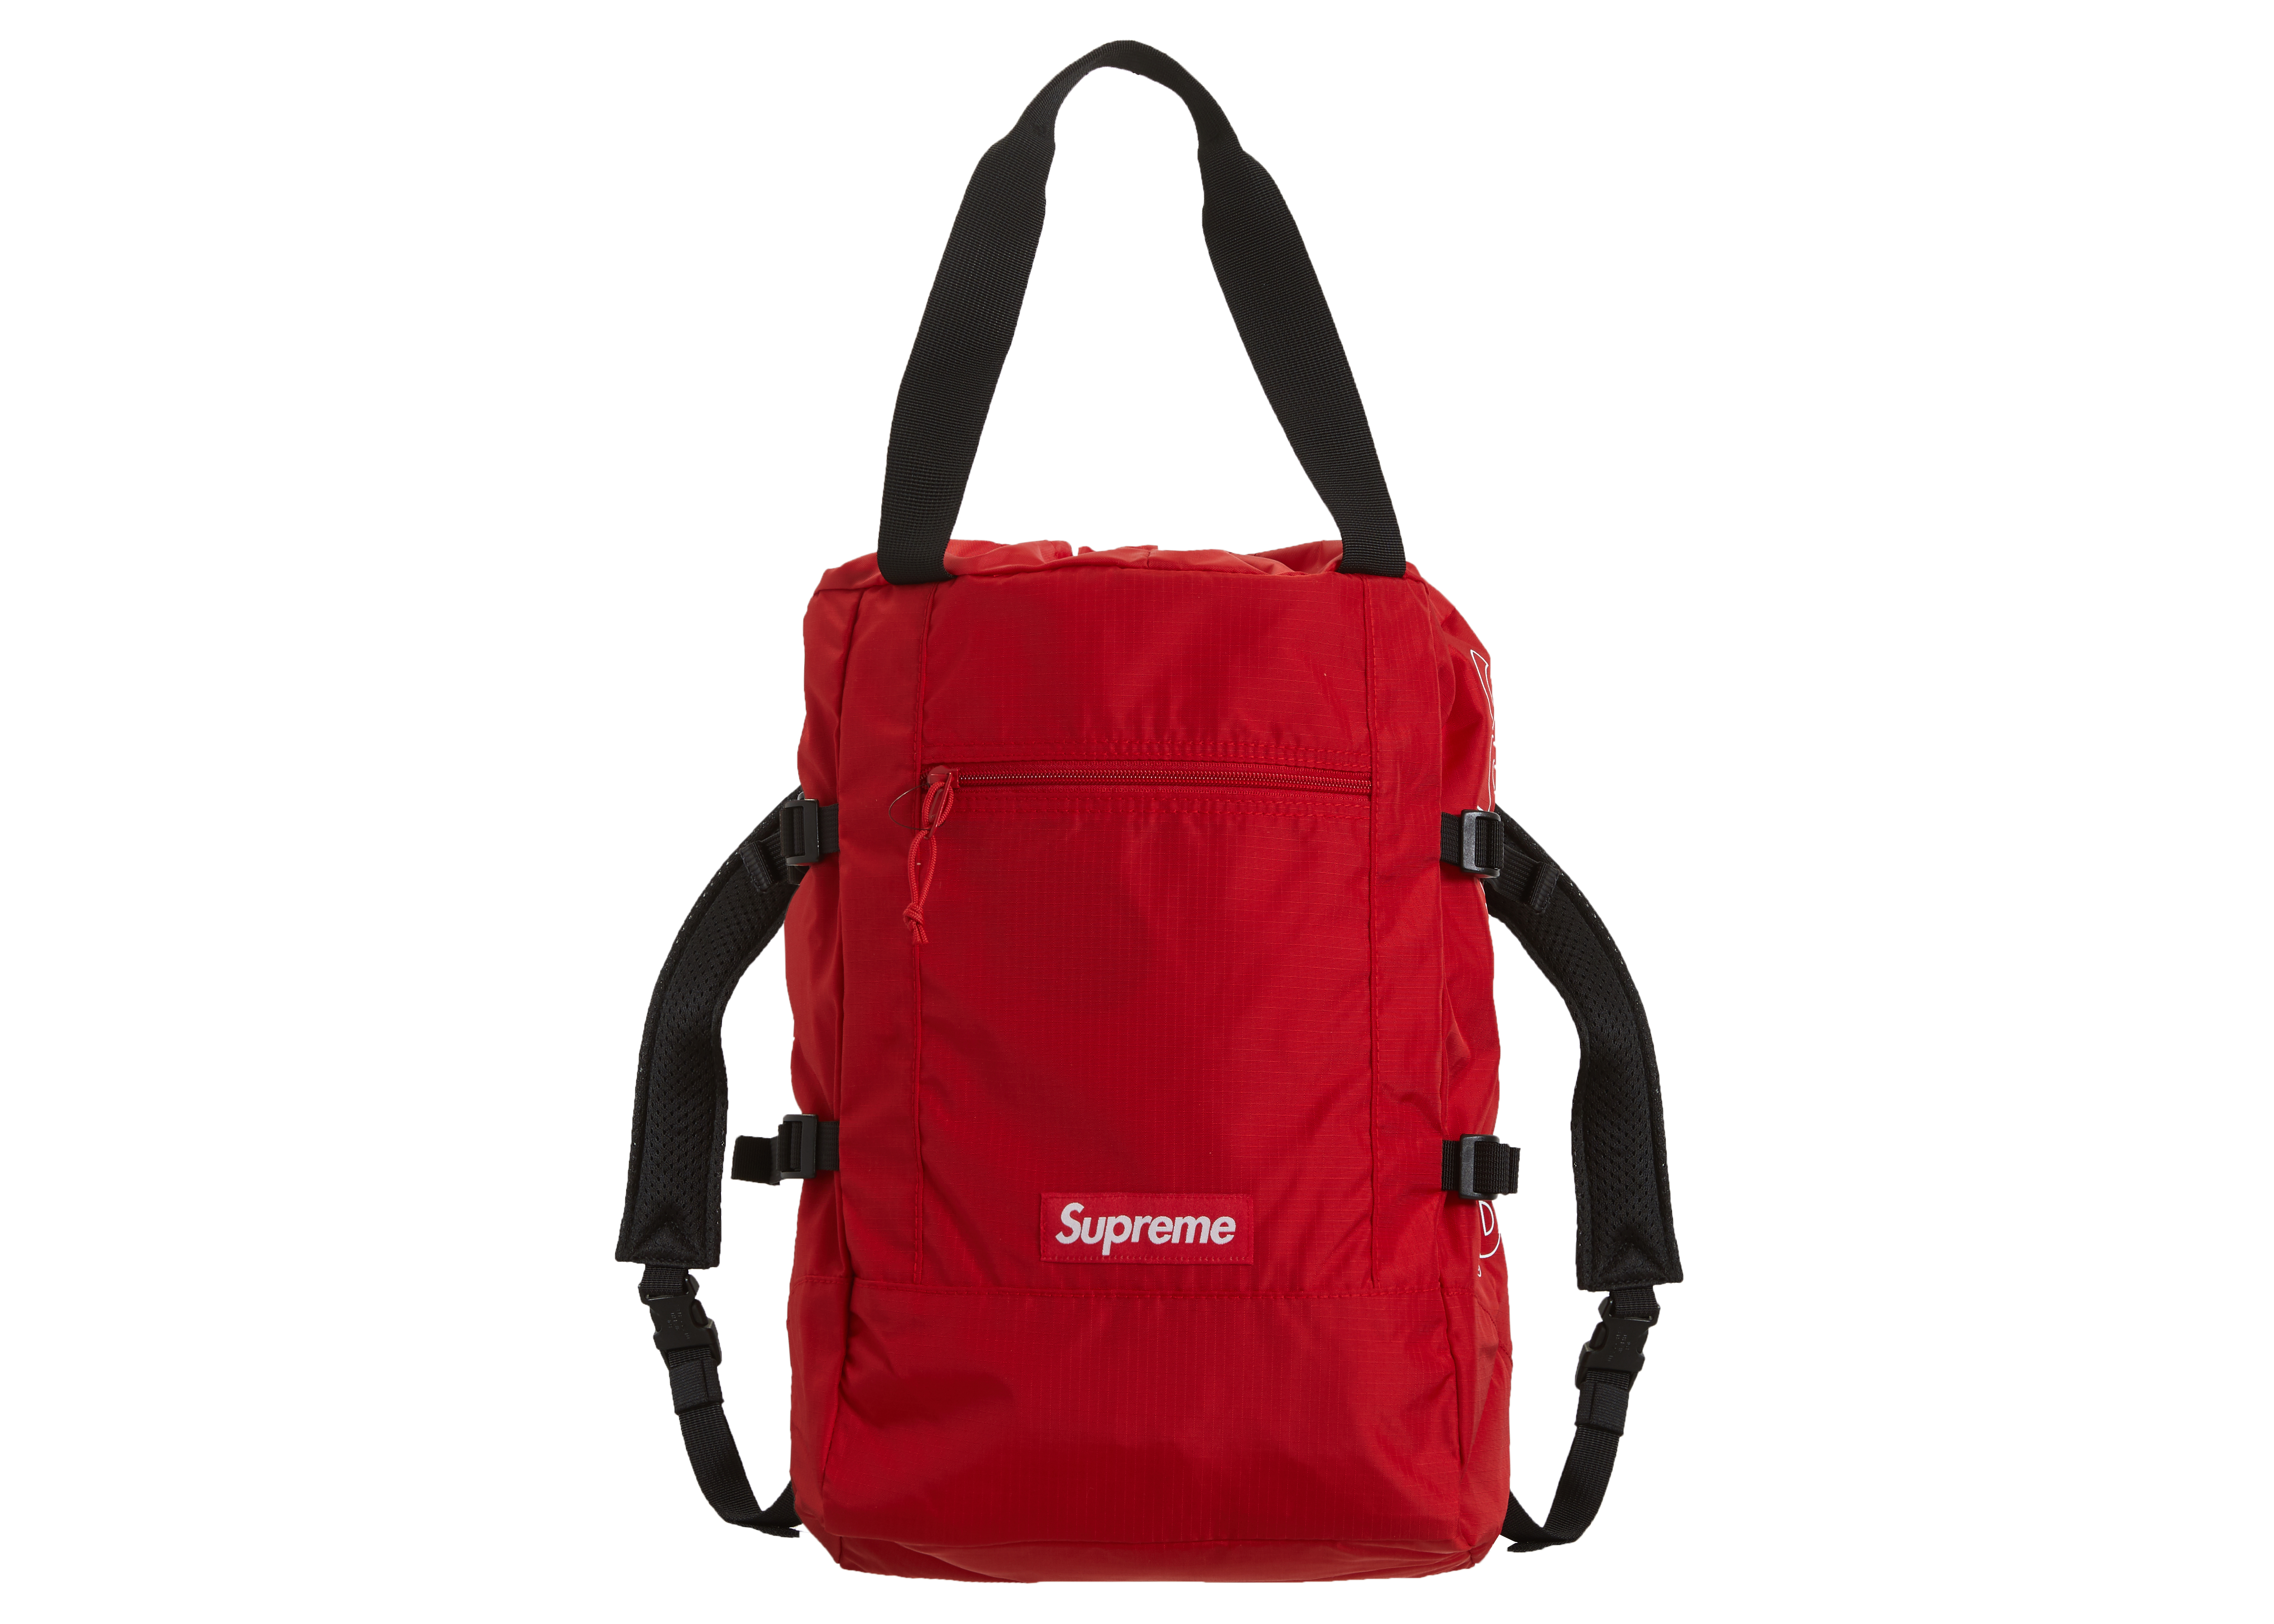 Supreme tote backpack(専用)